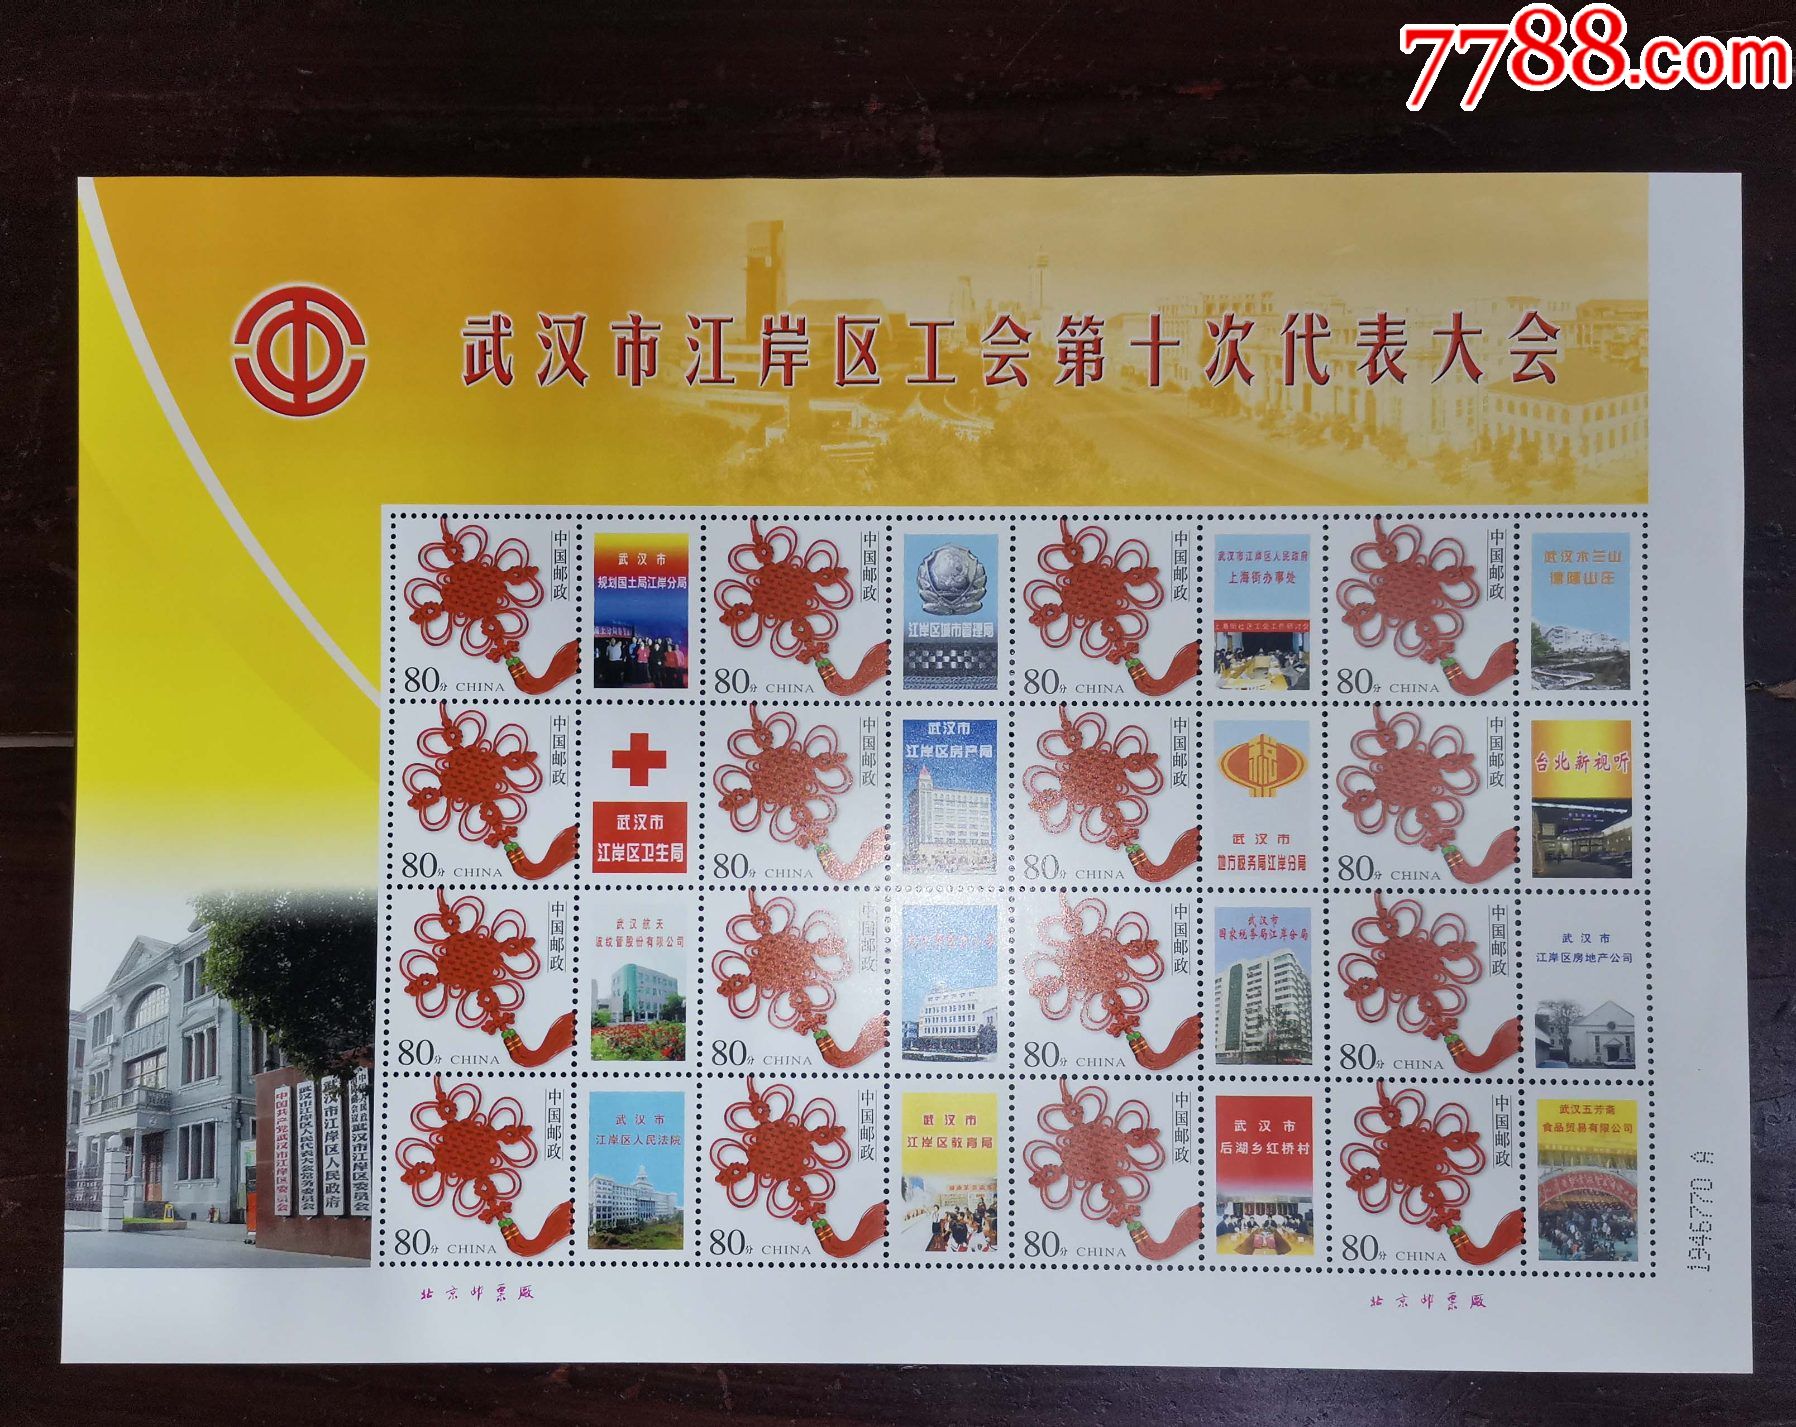 武汉市江岸区工会第十次代表大会个性化小版